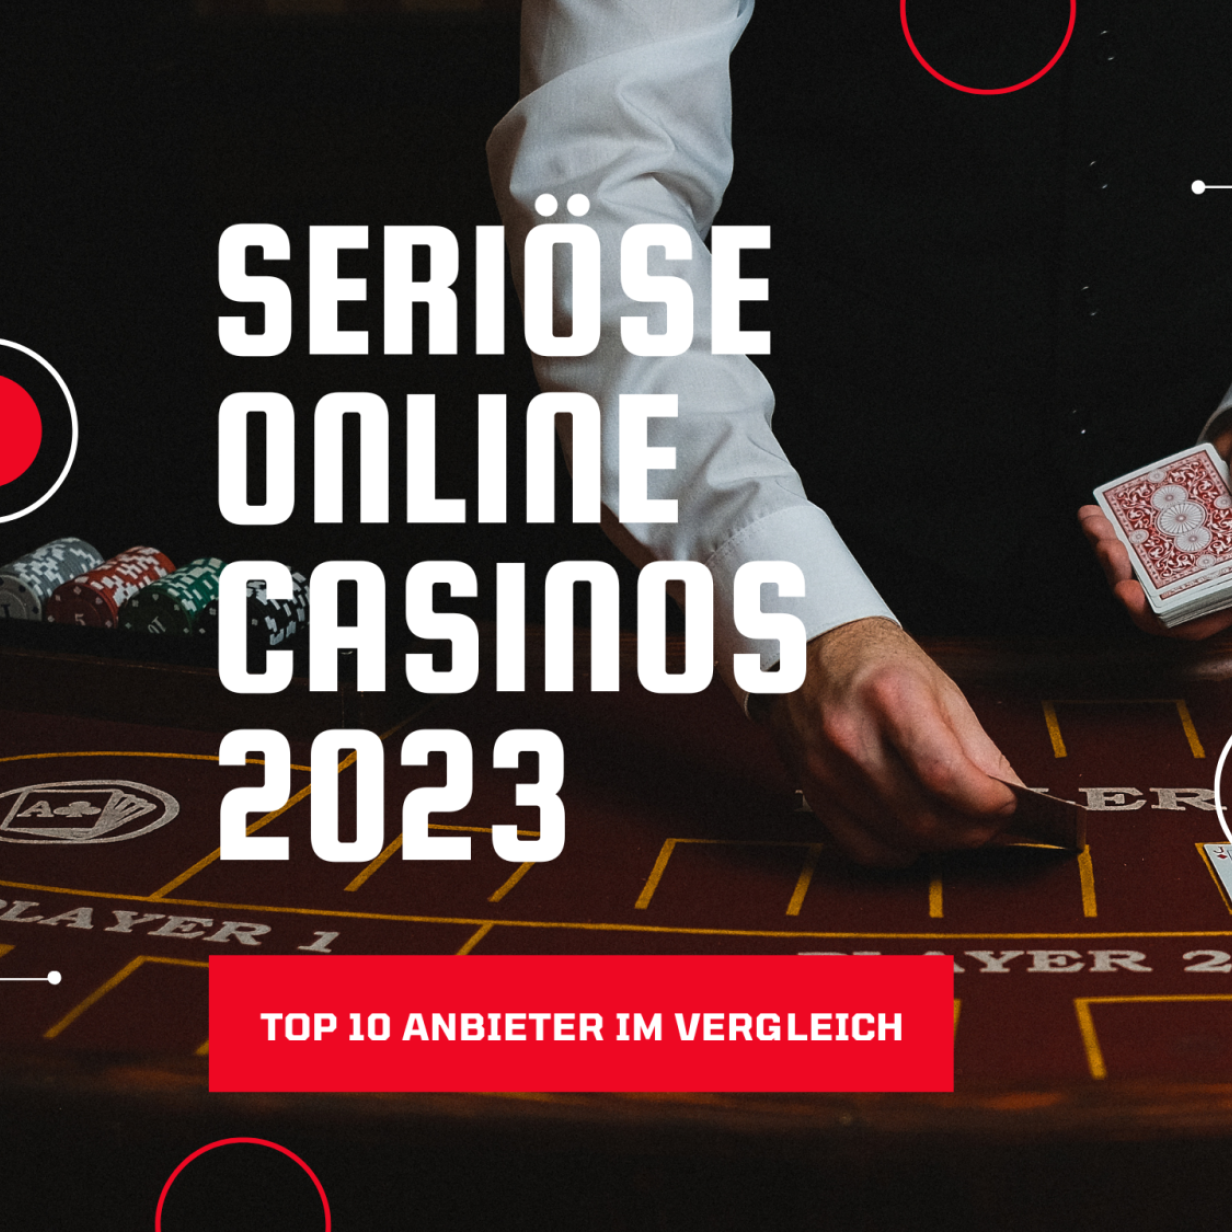 Macht mich seriöse Online Casinos reich?